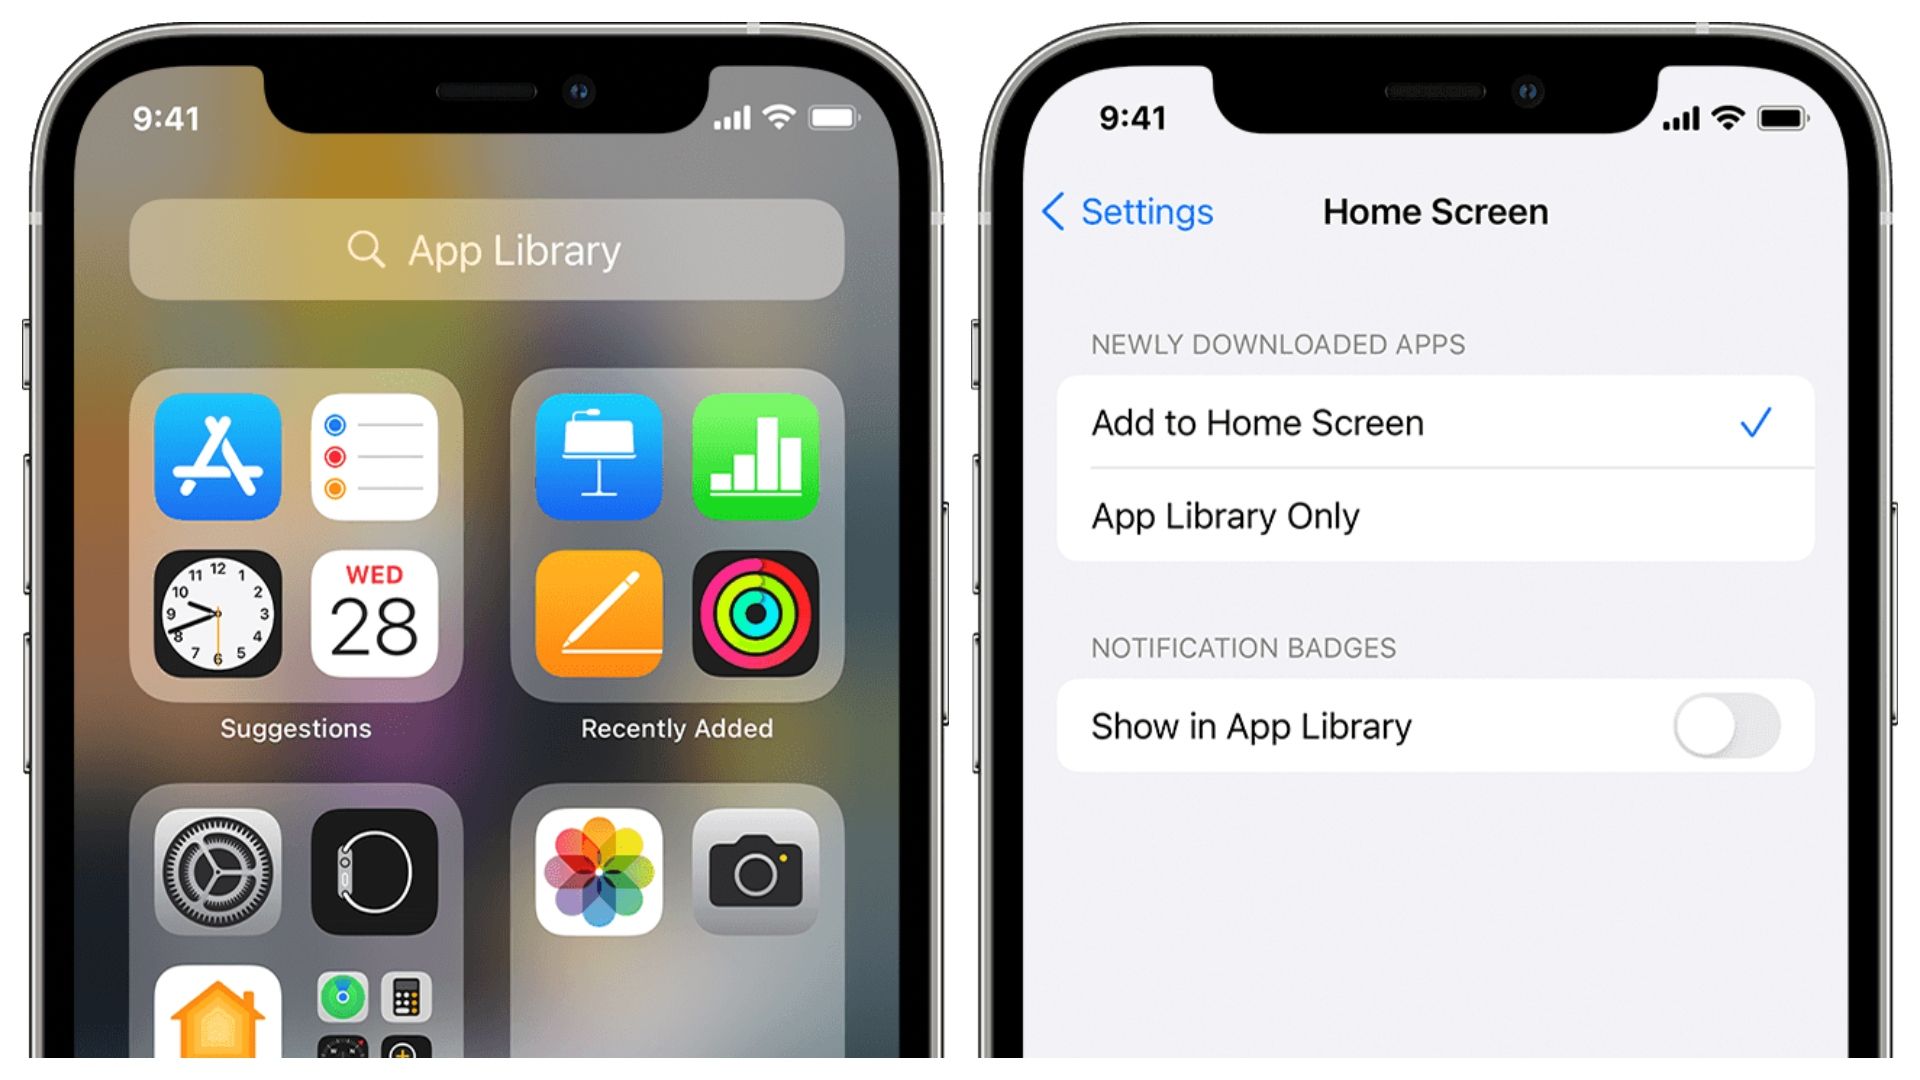 В этой статье мы рассмотрим, как добавлять приложения обратно на главный экран на iPhone, чтобы вы могли настроить расположение своих приложений по своему усмотрению.